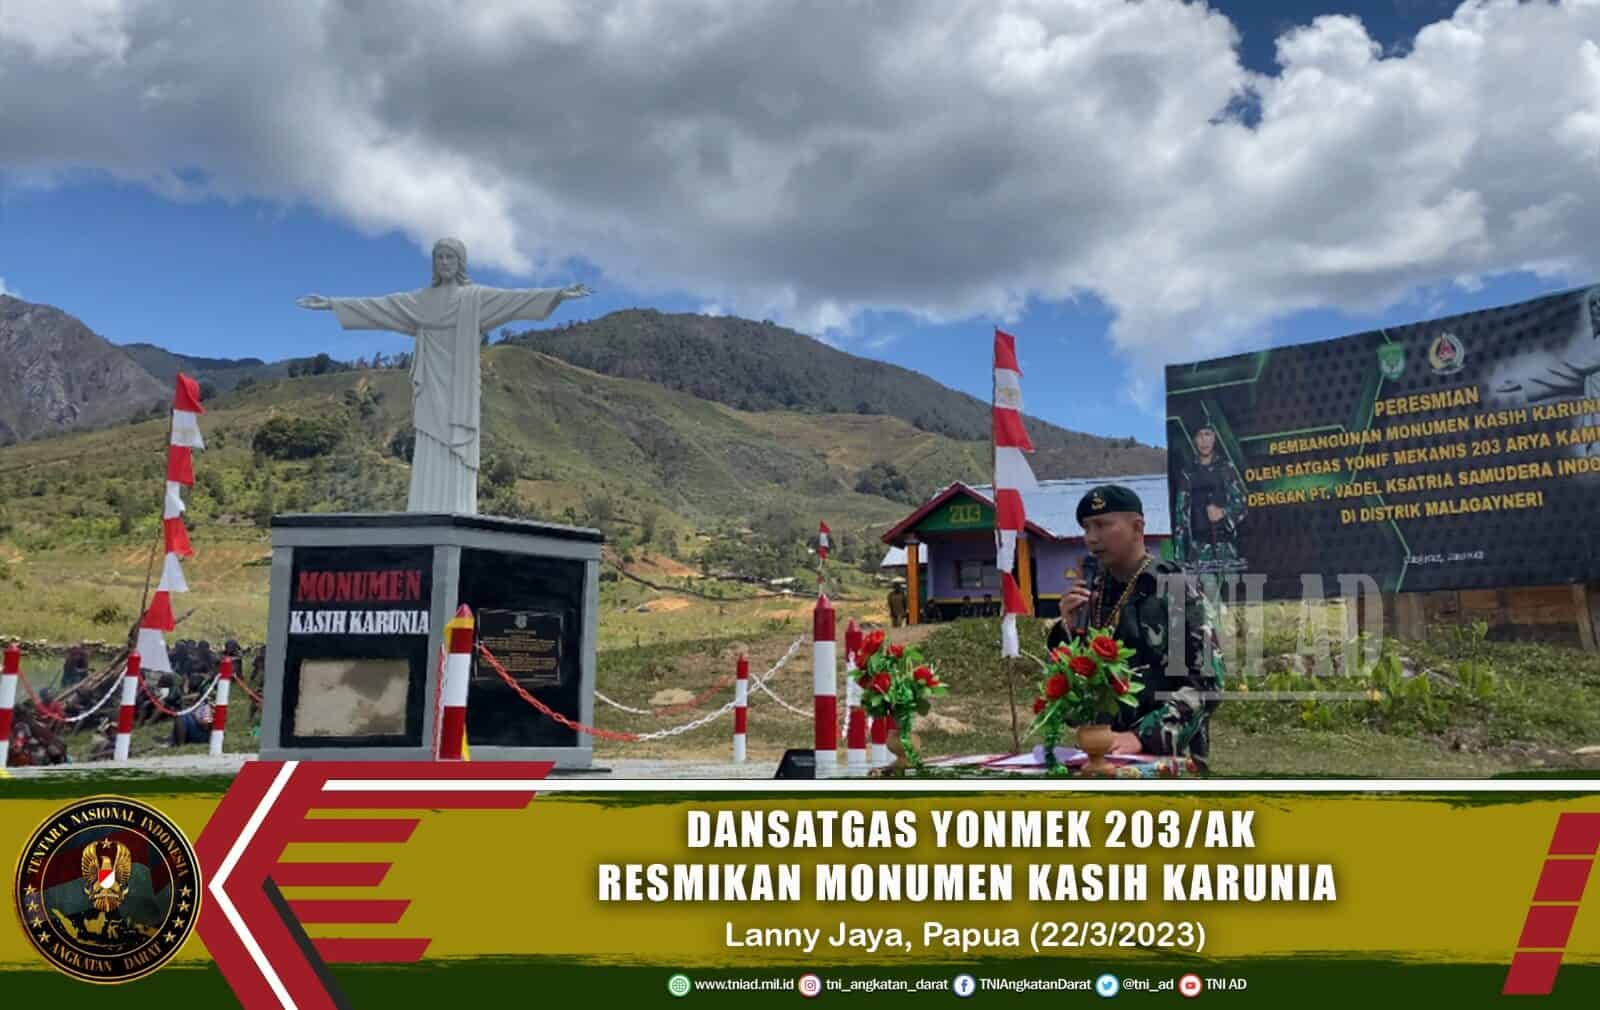 Dansatgas Yonmek 203/AK Resmikan Monumen Kasih Karunia di Distrik Malagayneri